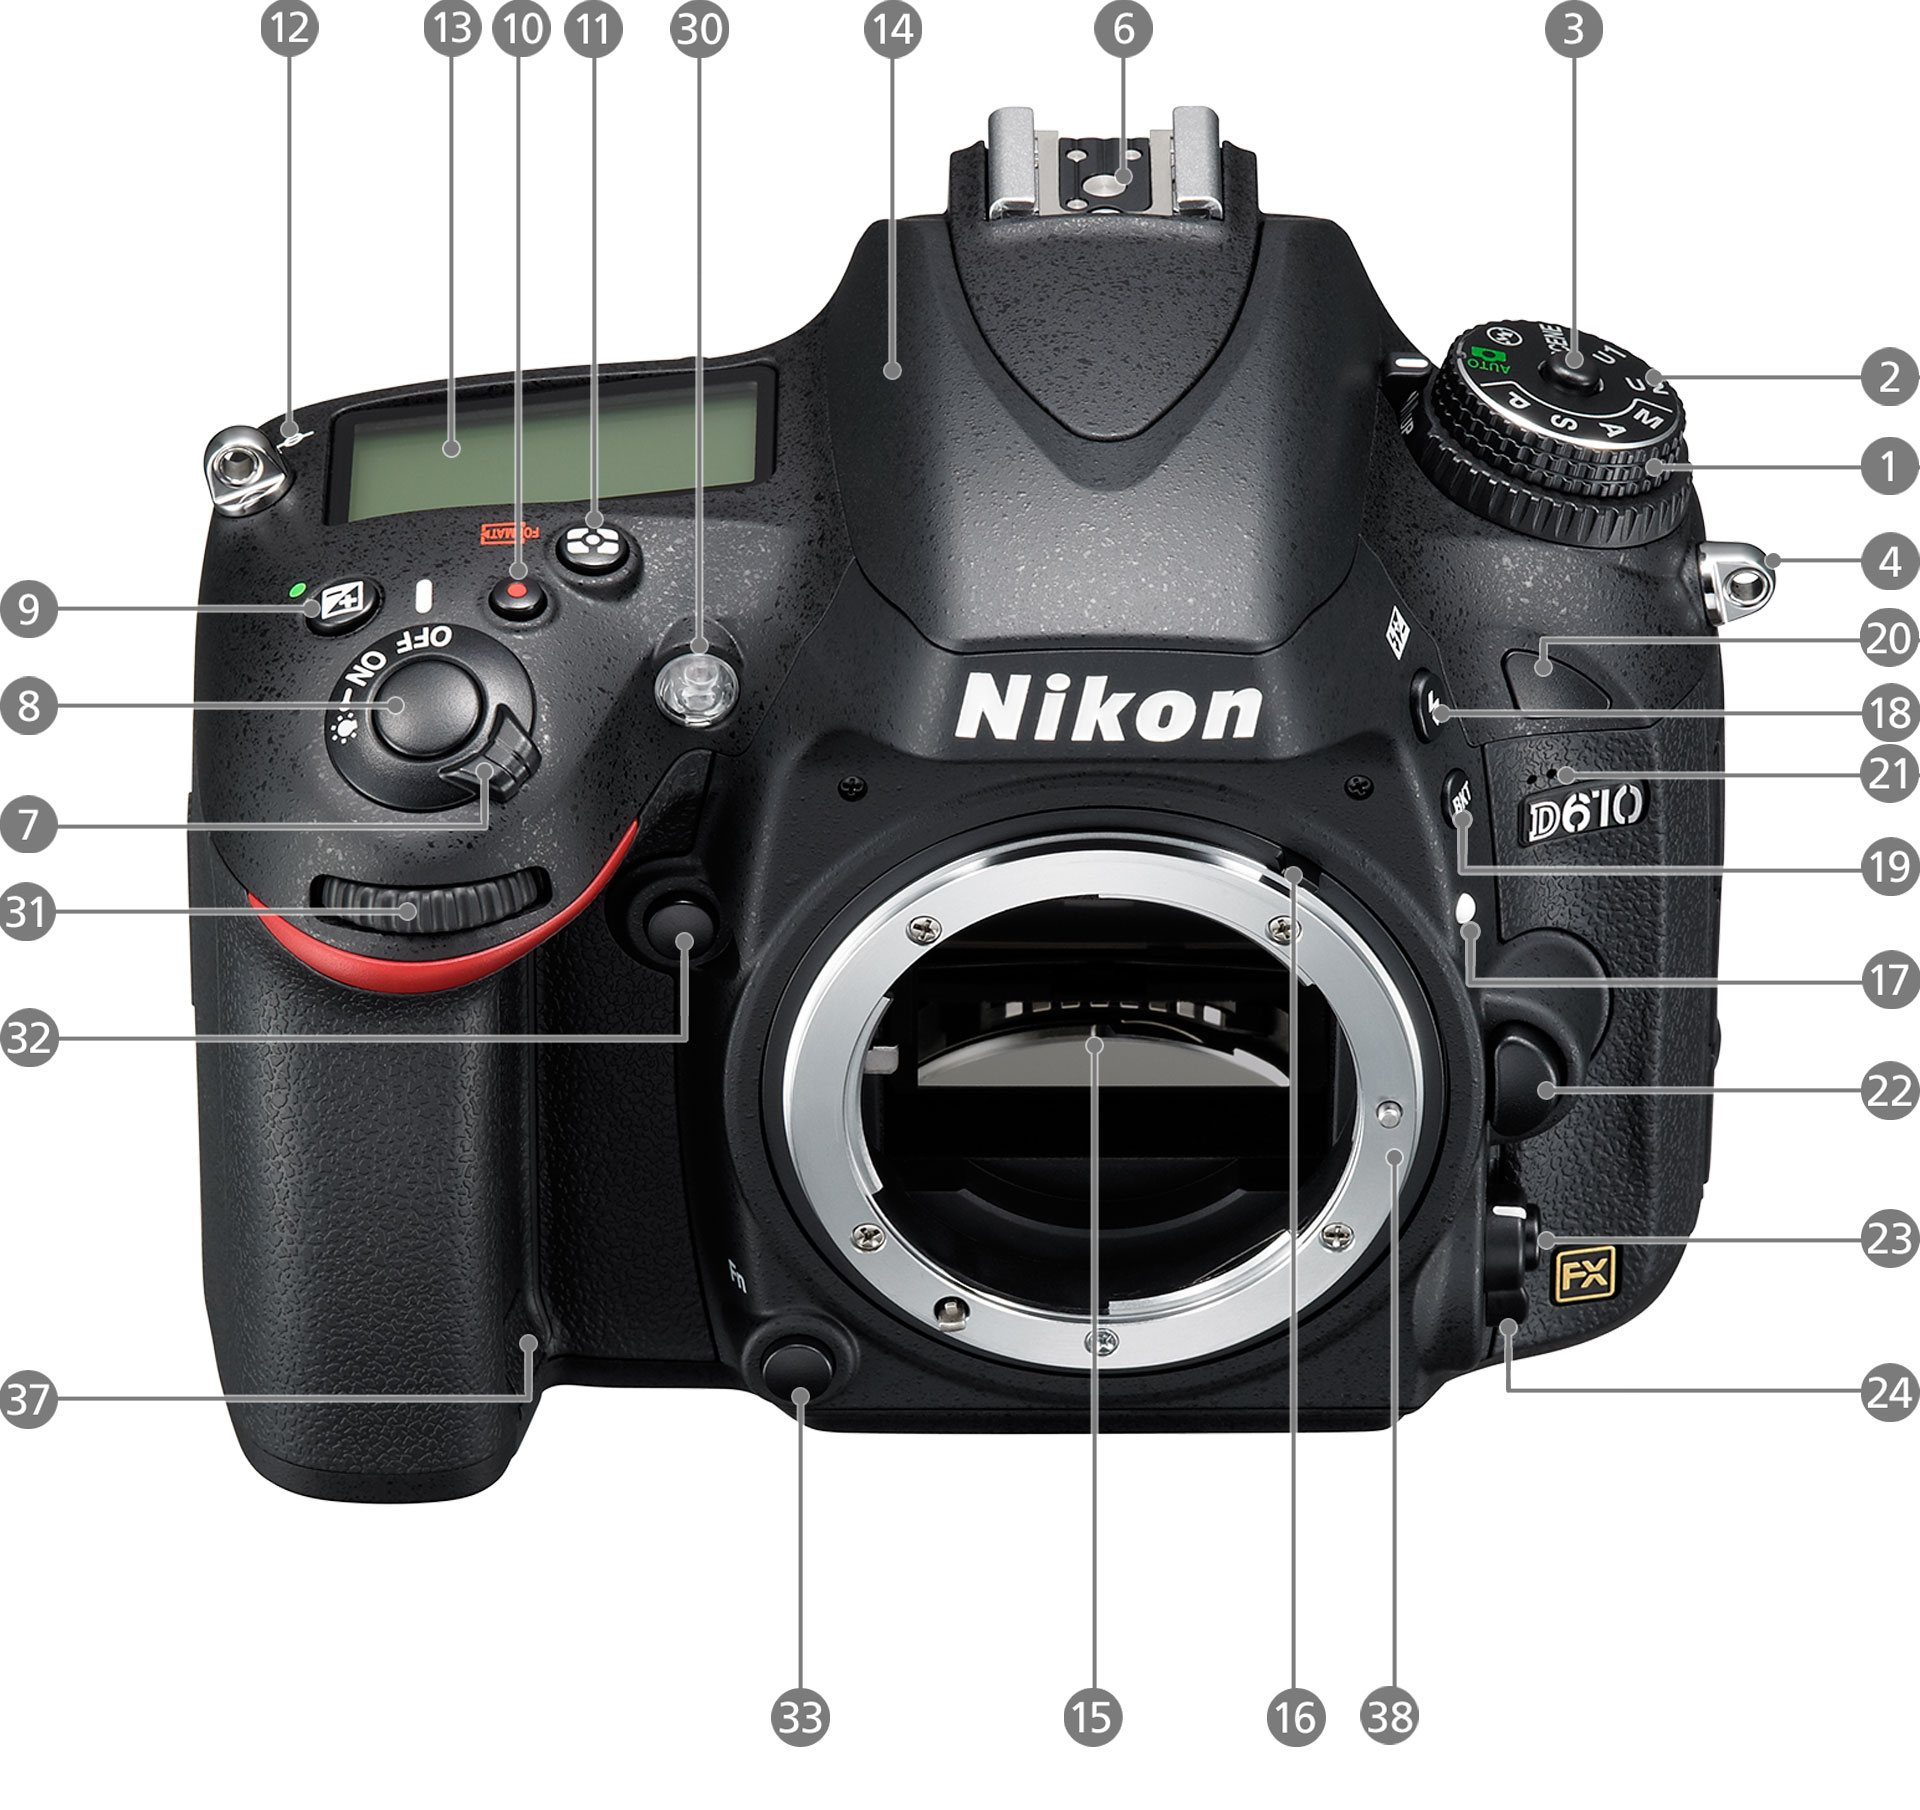 ニコン Nikon デジタル一眼レフカメラ D610 - デジタル一眼